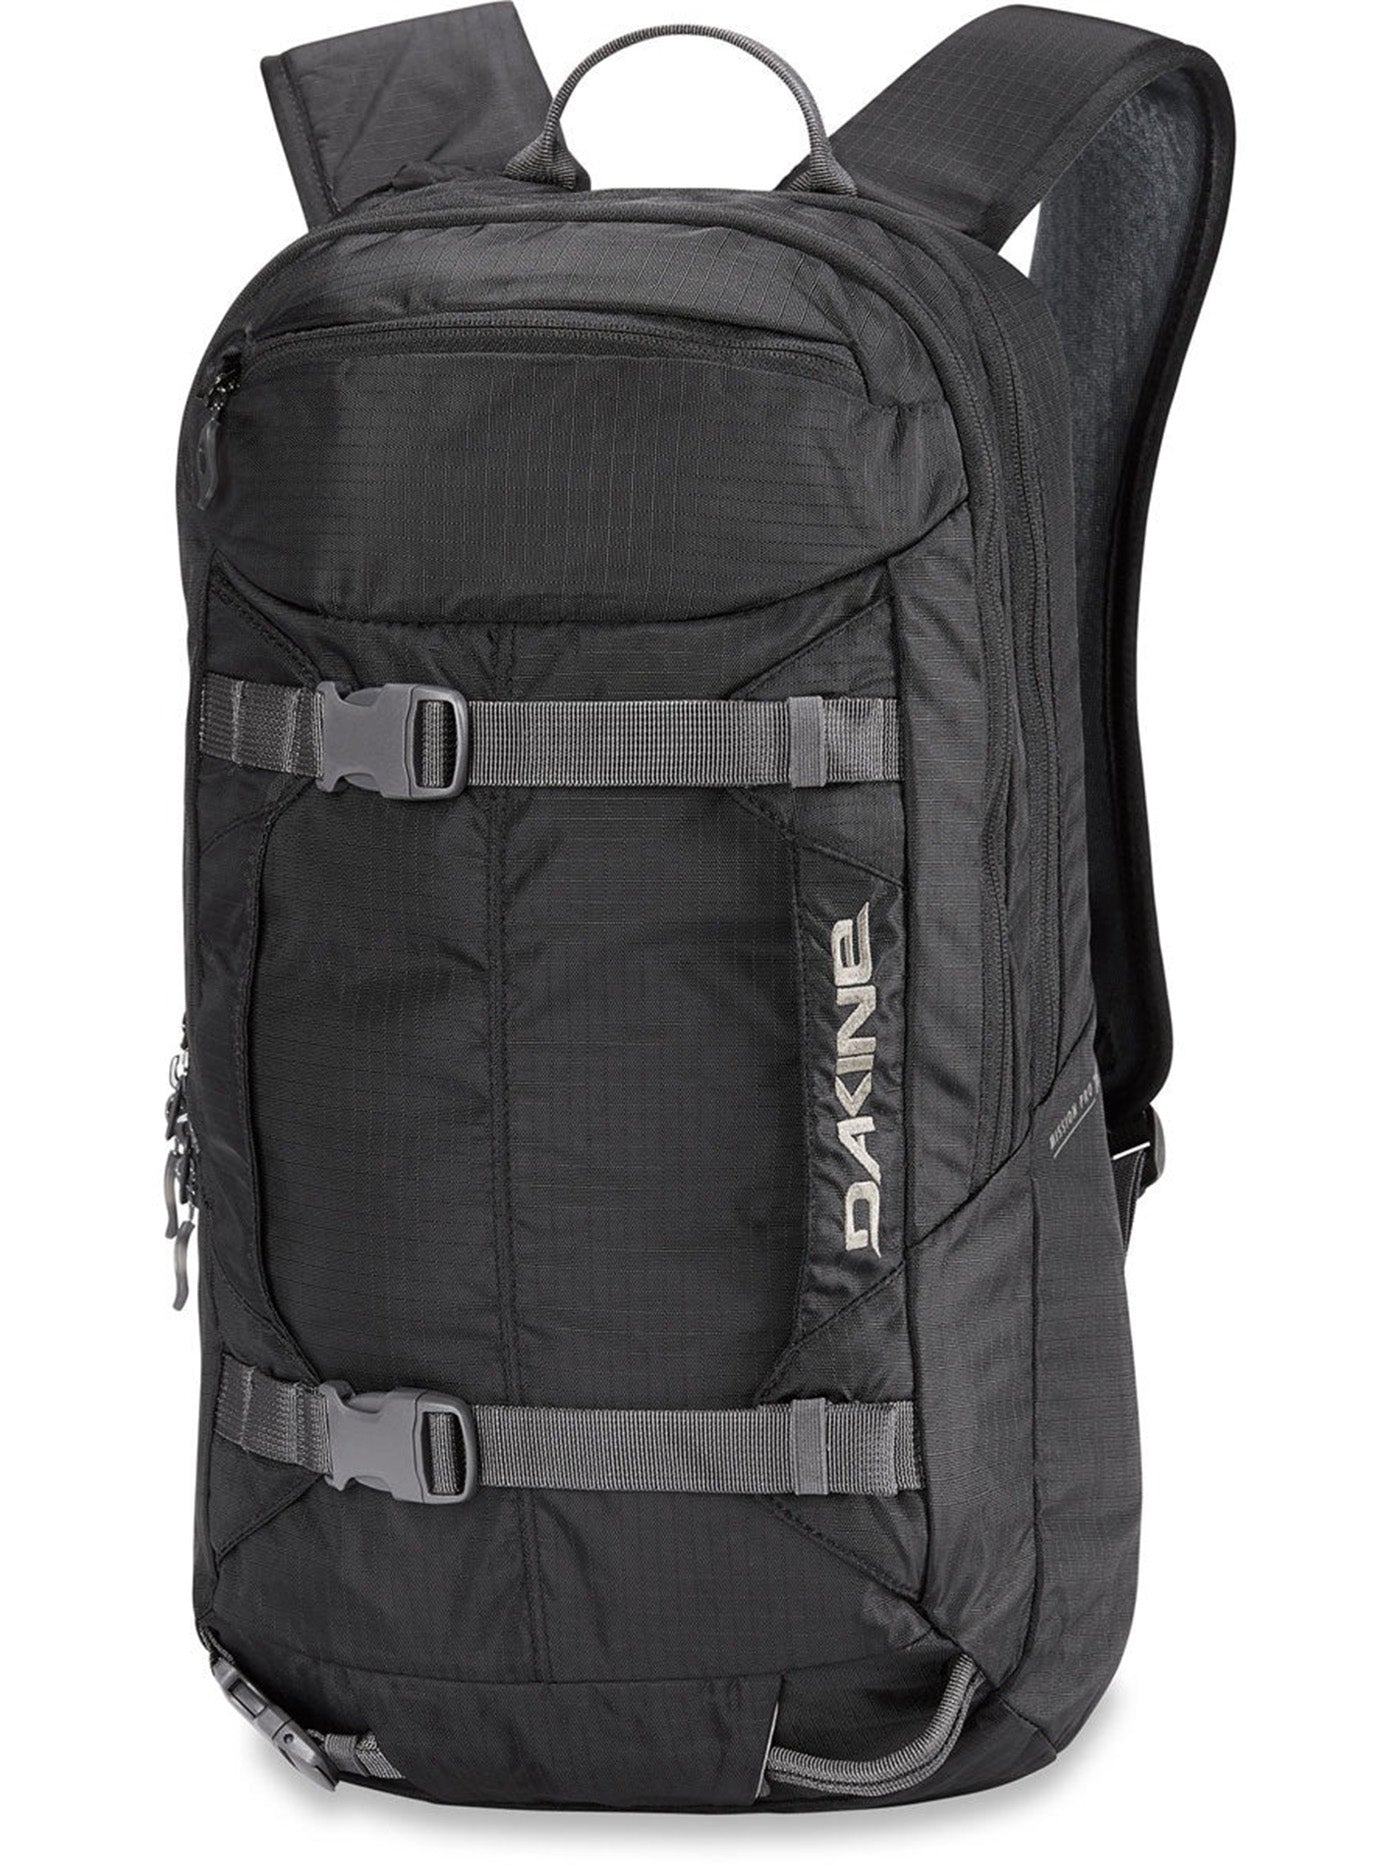 Dakine Mission Pro 18L Backpack